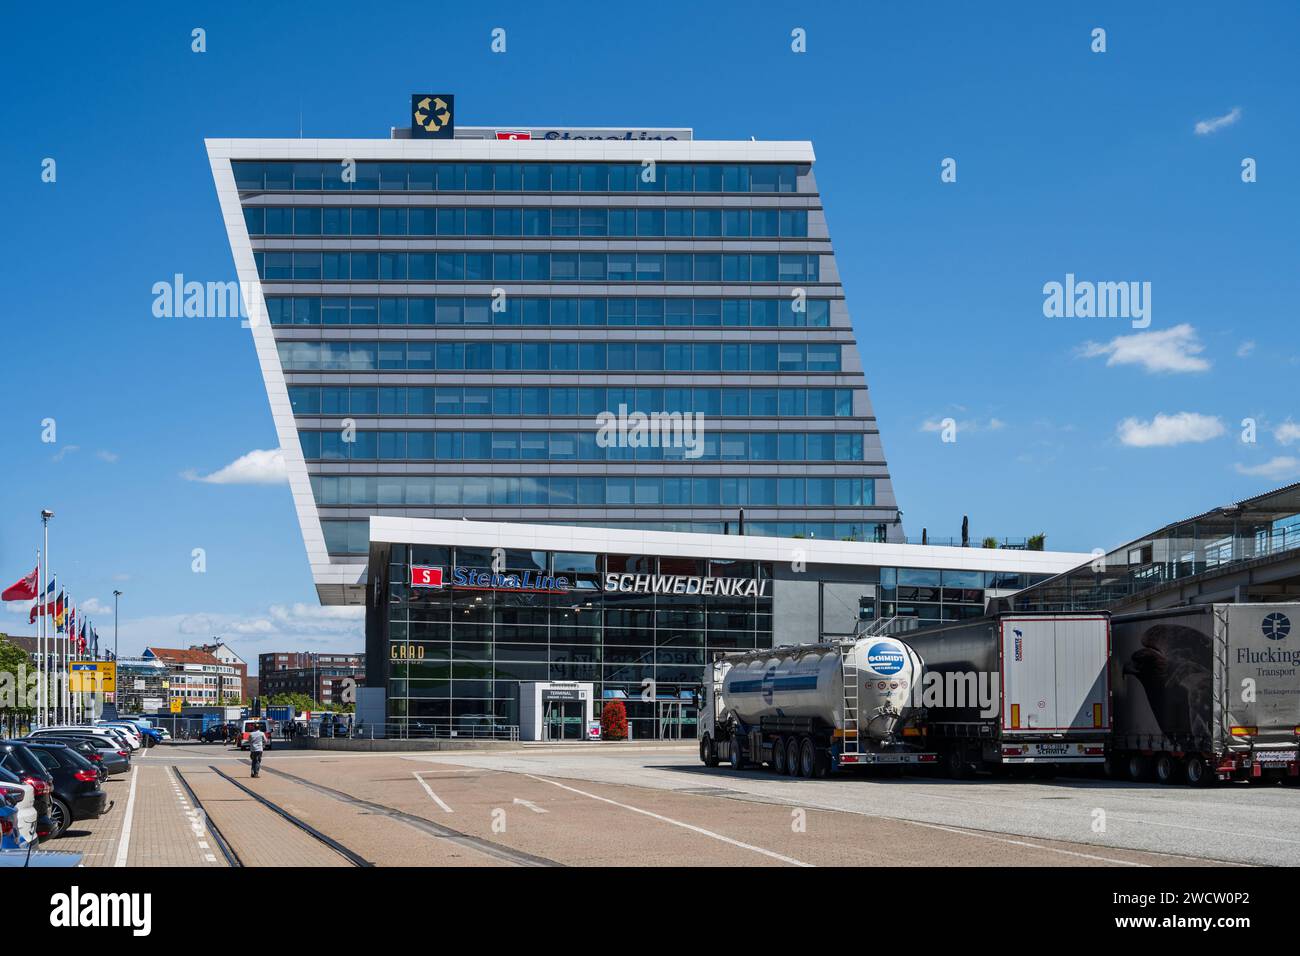 Ein architektonisches Kleinod, das Abfertigungsgebäude der Stena Line am Schwedenkai *** An architectural gem, the Stena Line terminal building at Schwedenkai Stock Photo